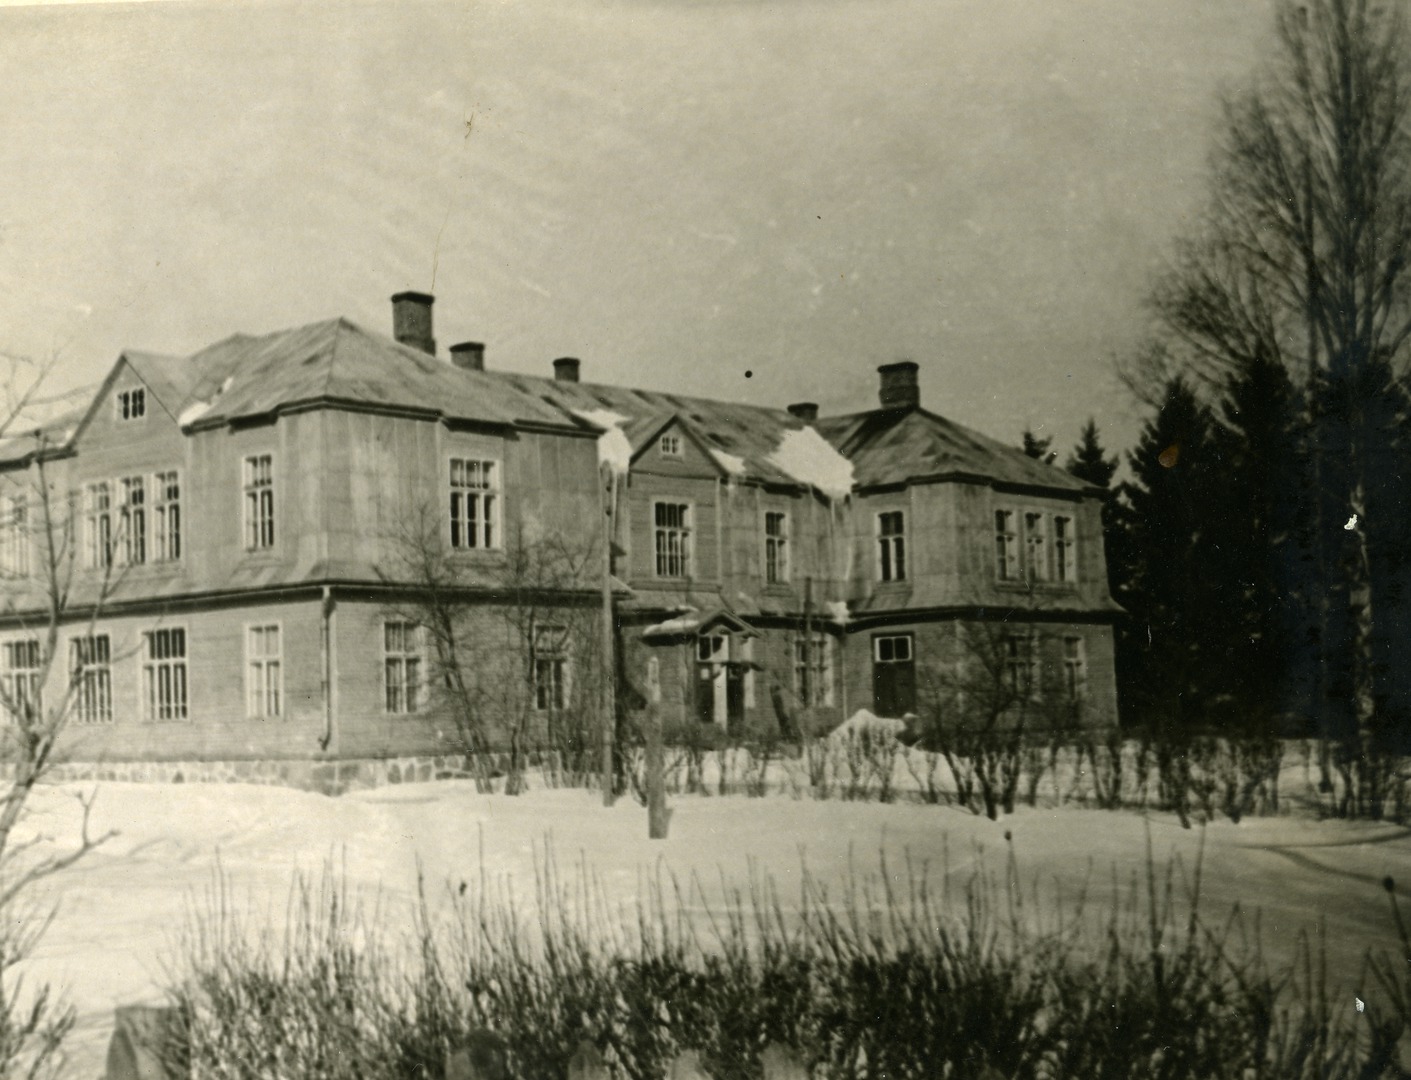 Island 8-kl School buildings in Jôgevamaa